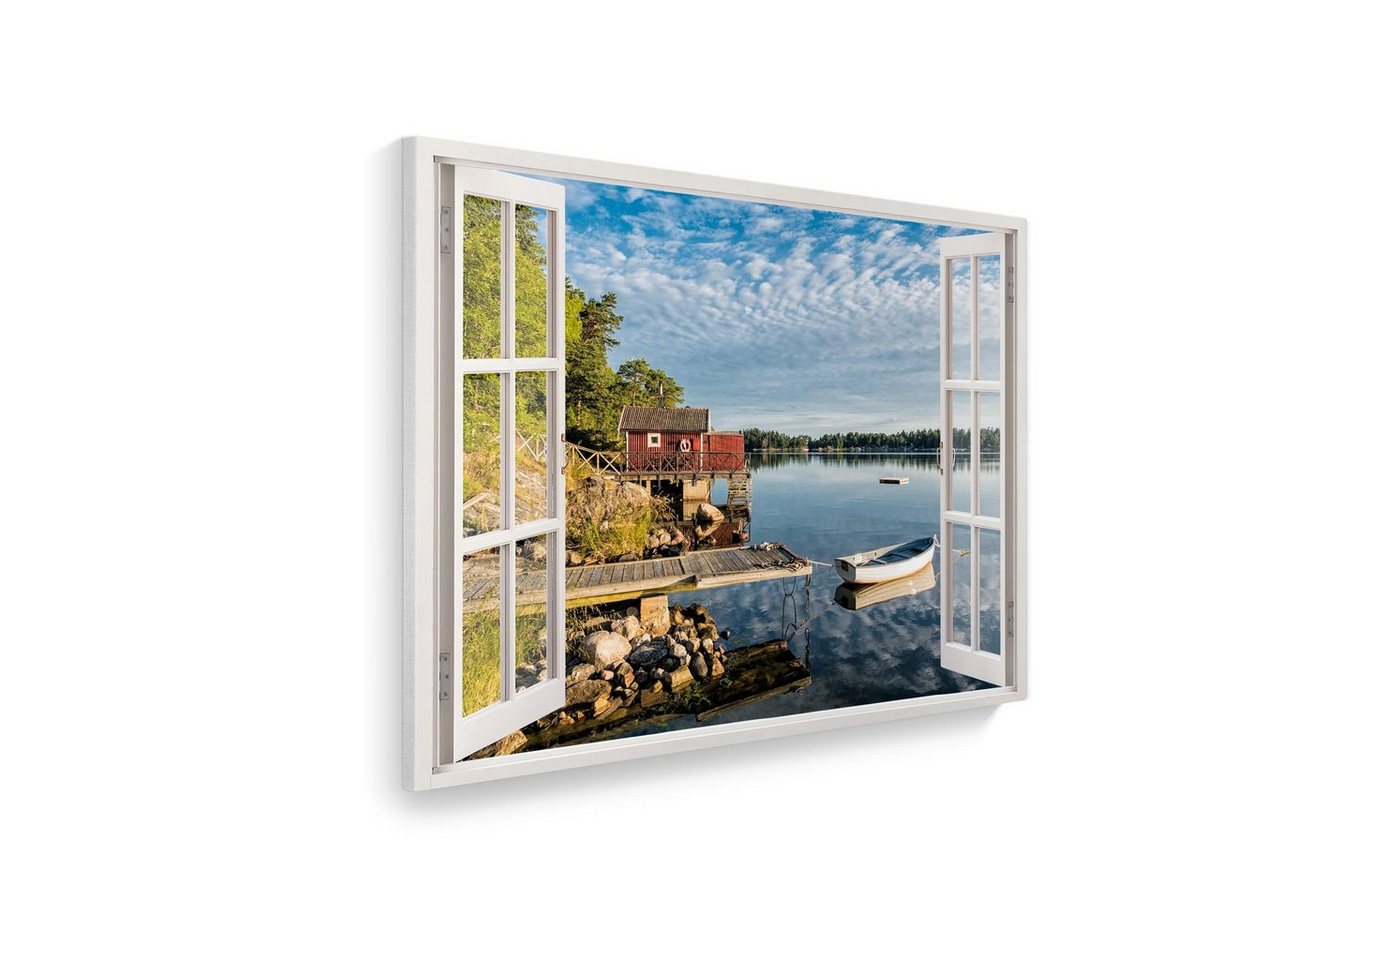 WallSpirit Leinwandbild Fenster mit Aussicht", Seeufer, Leinwandbild geeignet für alle Wohnbereiche" von WallSpirit